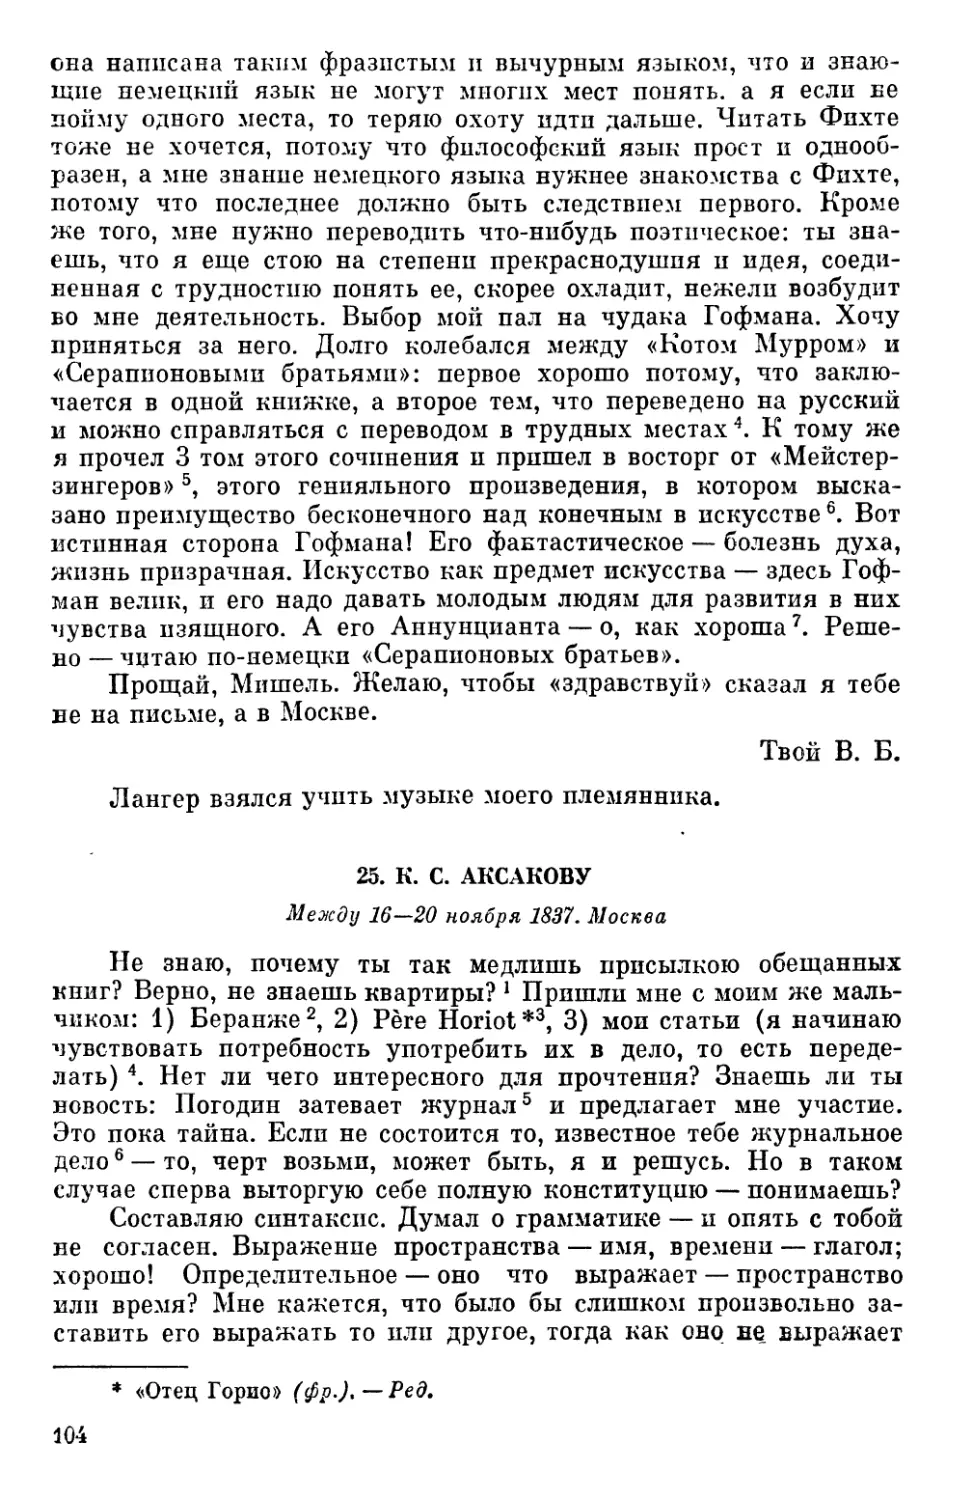 25. К. С. Аксакову. Между 16—20 ноября1837